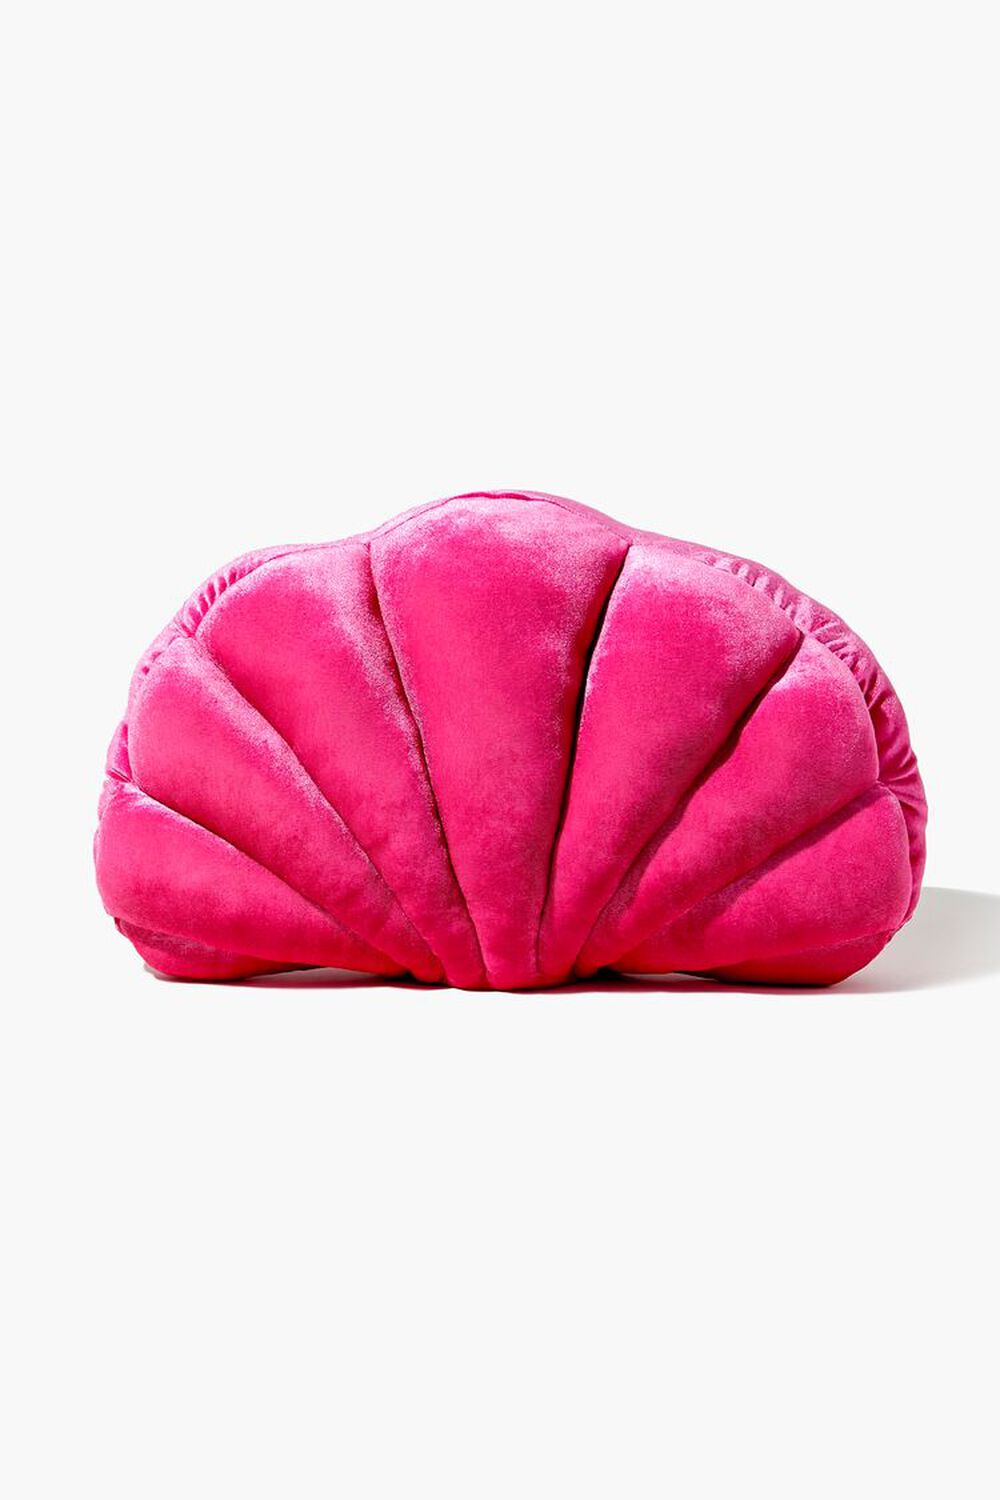 PINK Seashell Throw Pillow, image 1